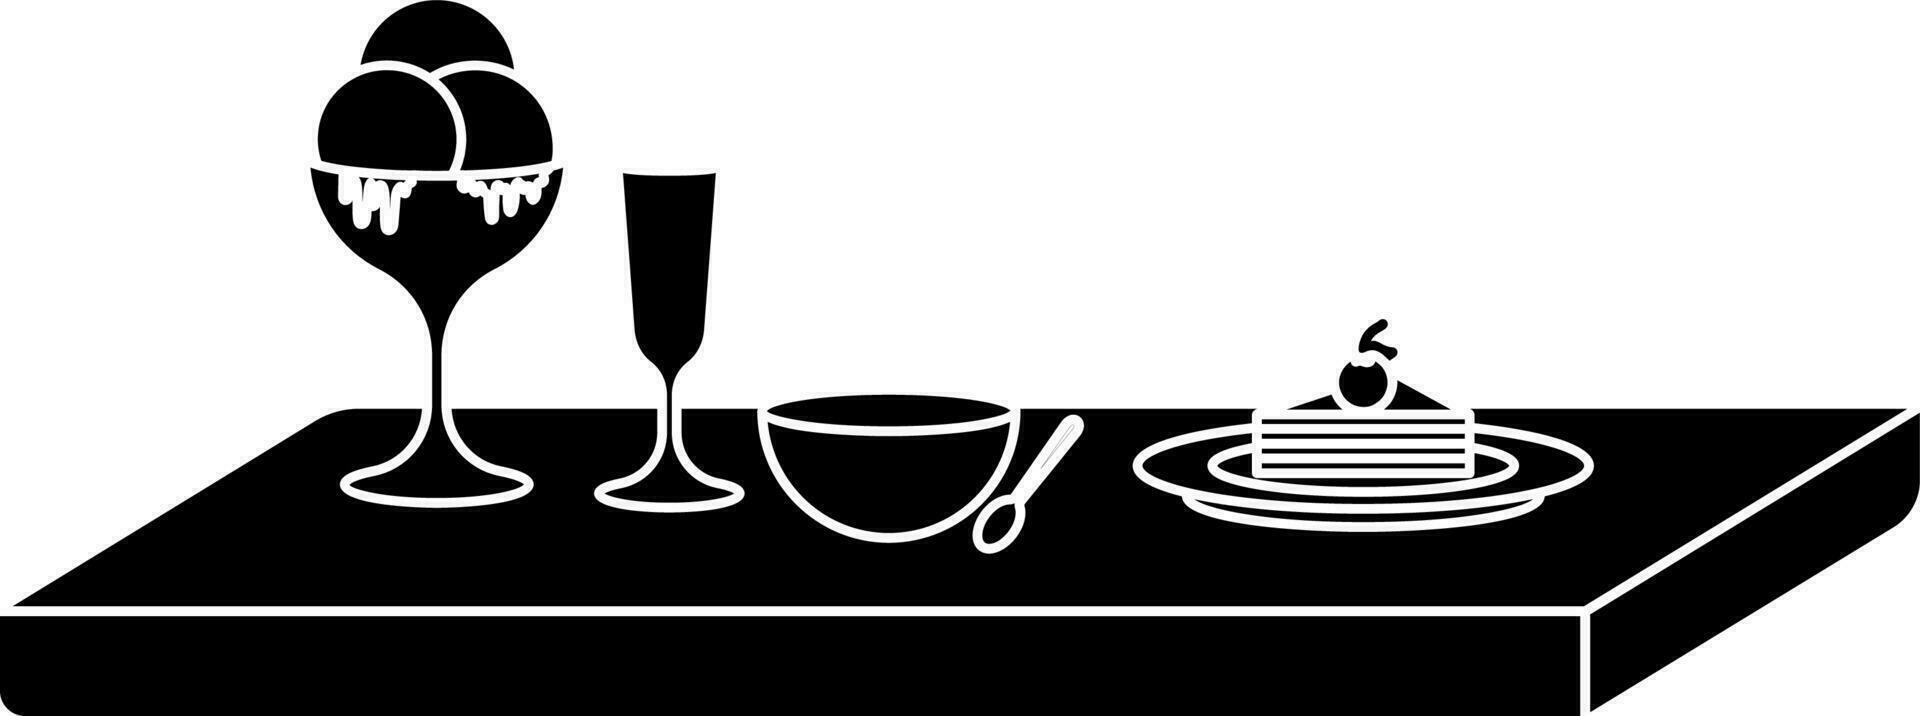 skål, sked, cocktail glasögon och is grädde glas dekorerad på tabell. vektor